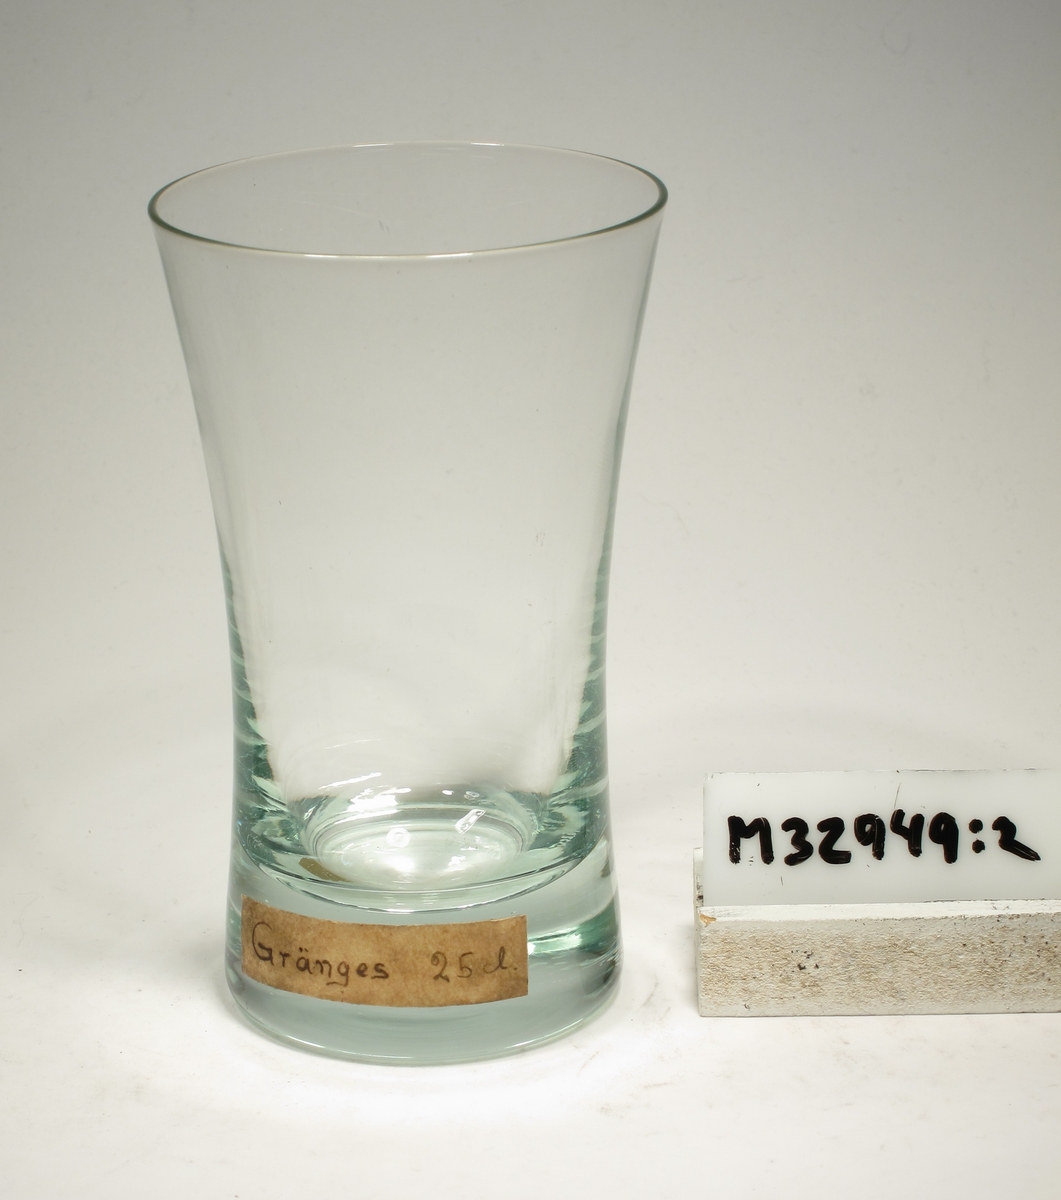 Glas med konkav form.
Lapp: "Gränges 25 cl"